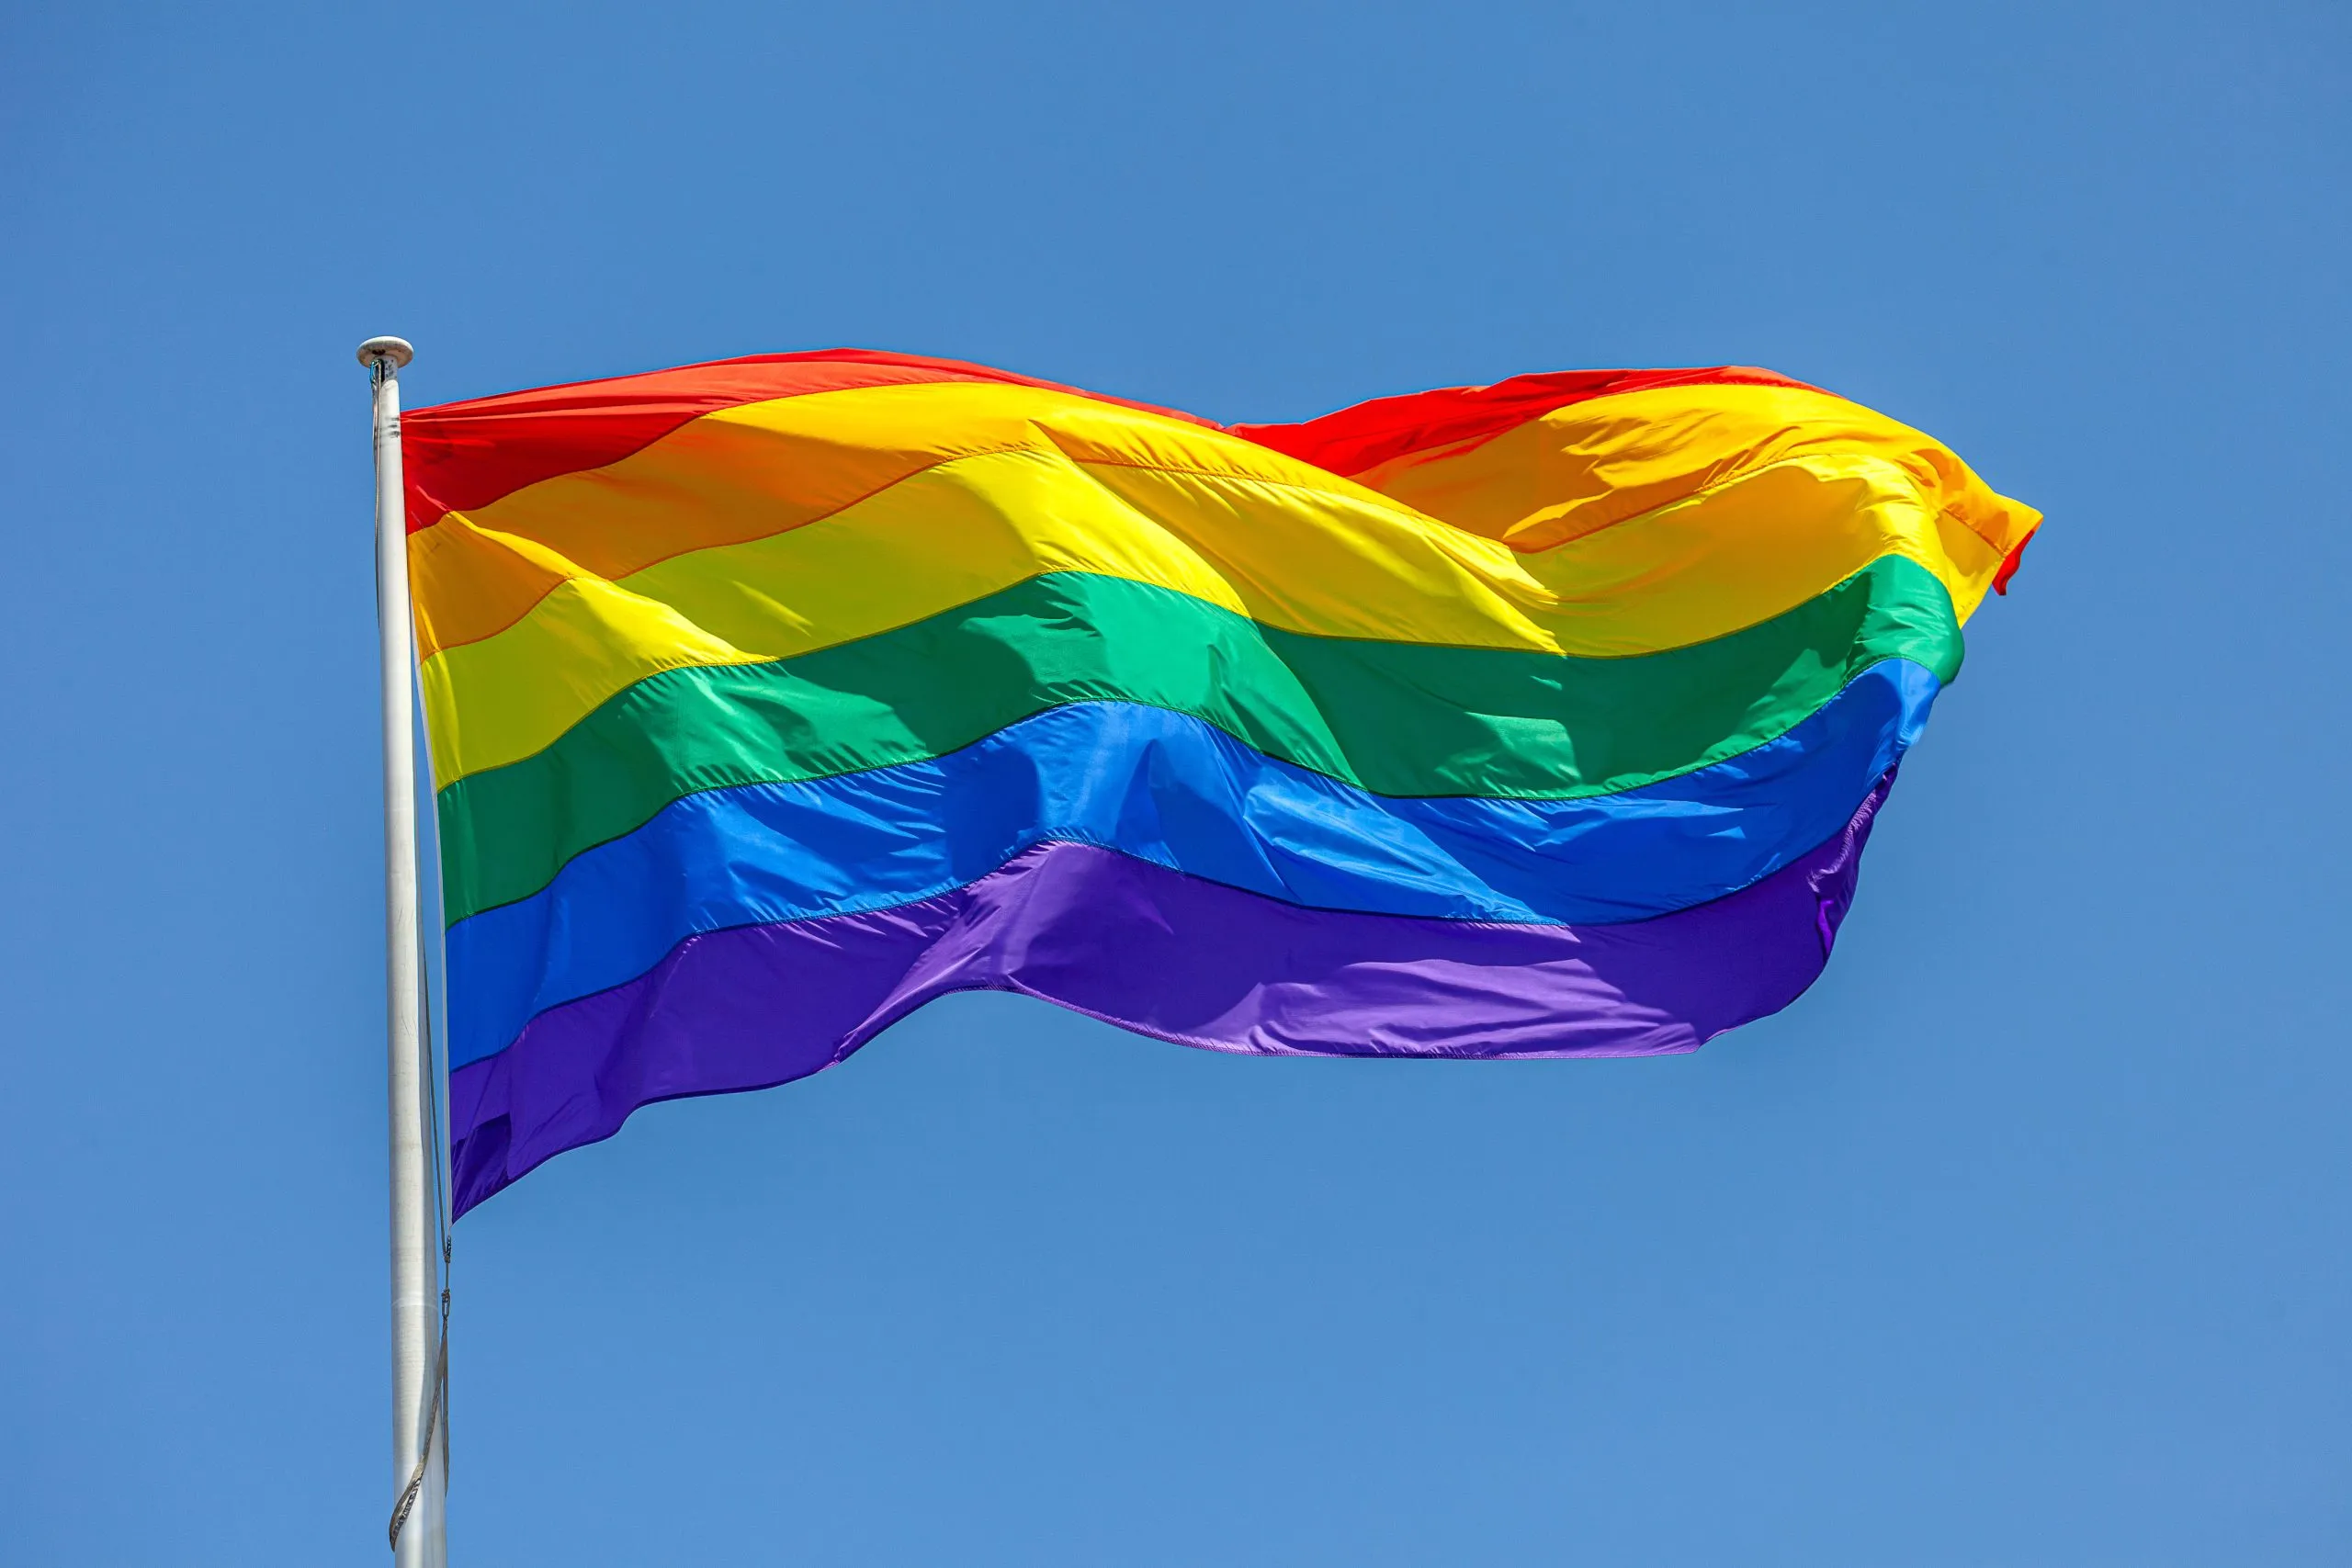 Projeto de Lei que proíbe casamento homoafetivo é inconstitucional e discriminatório, afirma OAB